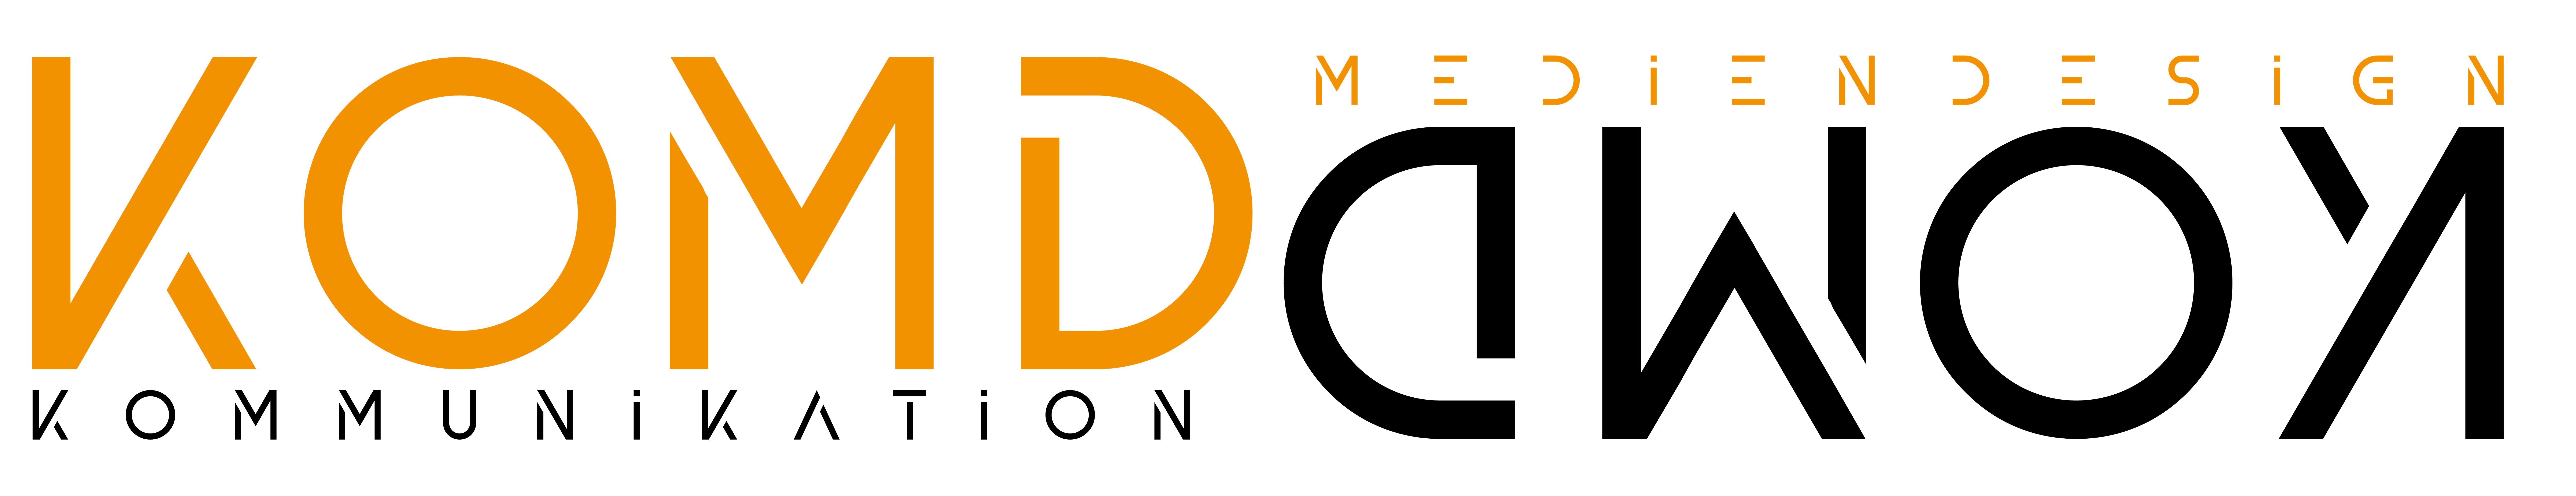 KoMd Logo